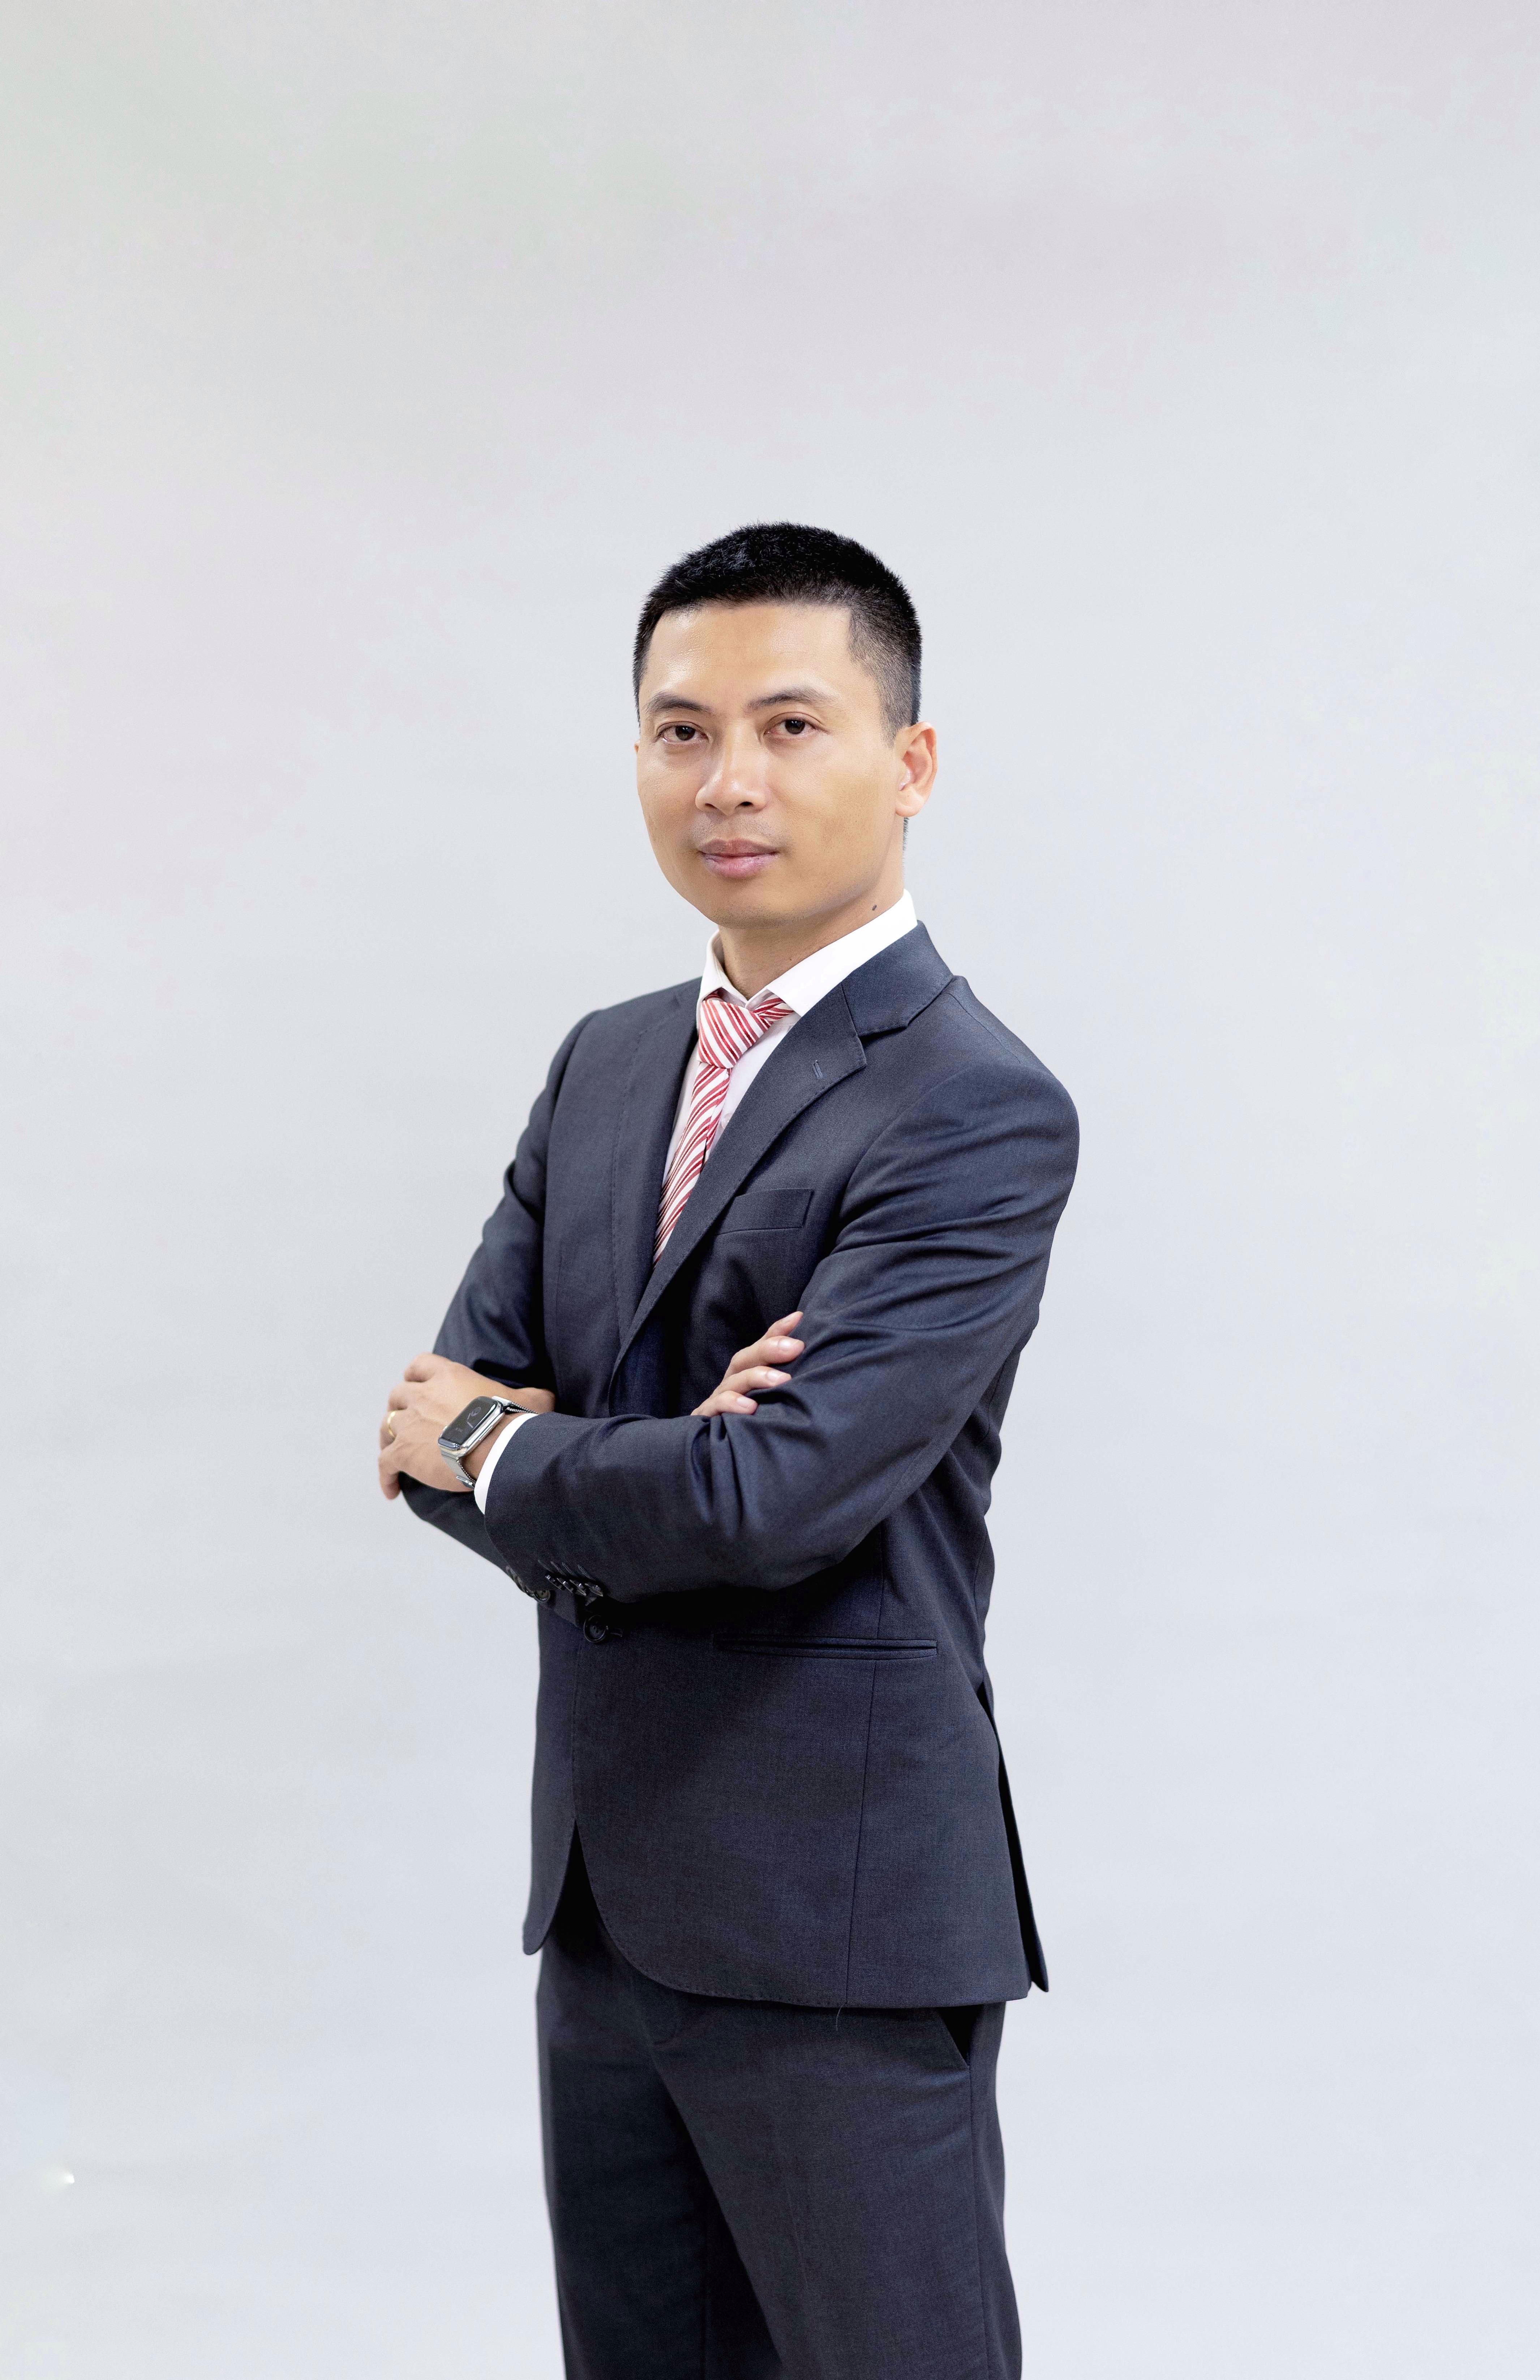 Mr. Nguyen Quang Vinh